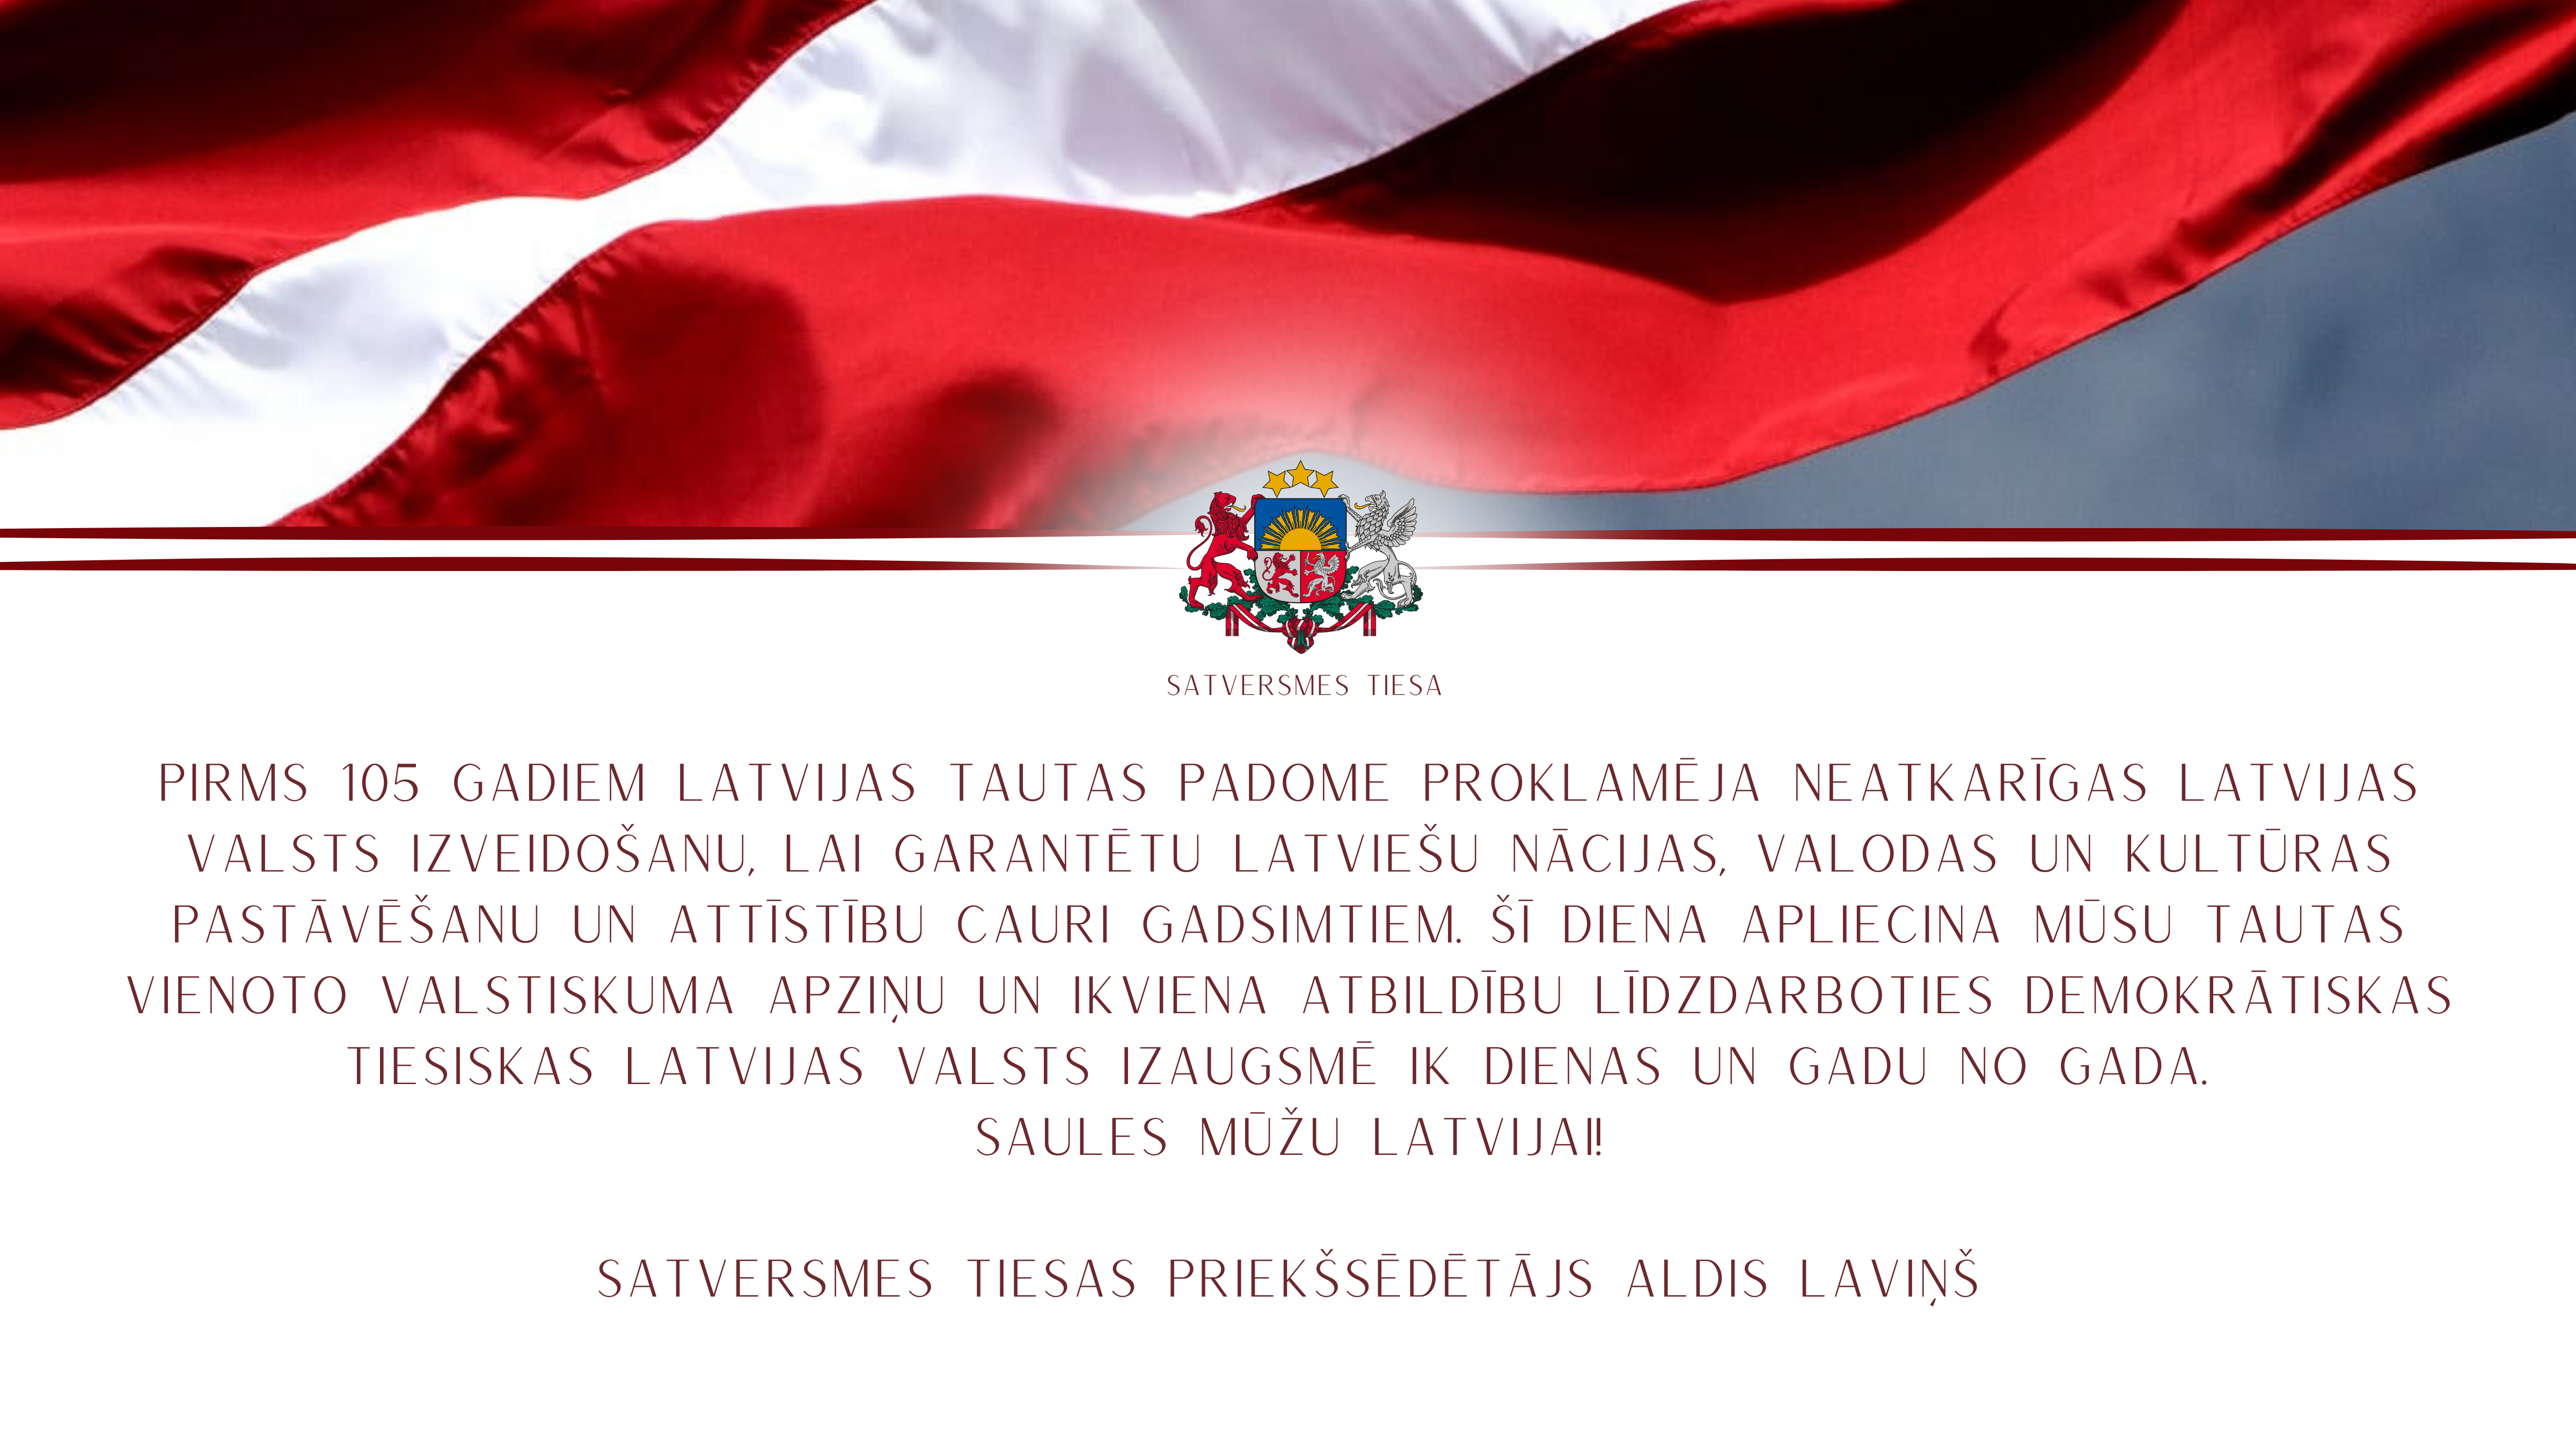 Pirms 105 gadiem Latvijas Tautas padome proklamēja neatkarīgas Latvijas valsts izveidošanu, lai garantētu latviešu nācijas, valodas un kultūras pastāvēšanu un attīstību cauri gadsimtiem. Šī diena apliecina mūsu tautas vienoto valstiskuma apziņu un ikviena atbildību līdzdarboties demokrātiskas tiesiskas Latvijas valsts izaugsmē ik dienas un gadu no gada. 
Saules mūžu Latvijai!
Satversmes tiesas priekšsēdētājs Aldis Laviņš
Foto: Gatis Bārdiņš
